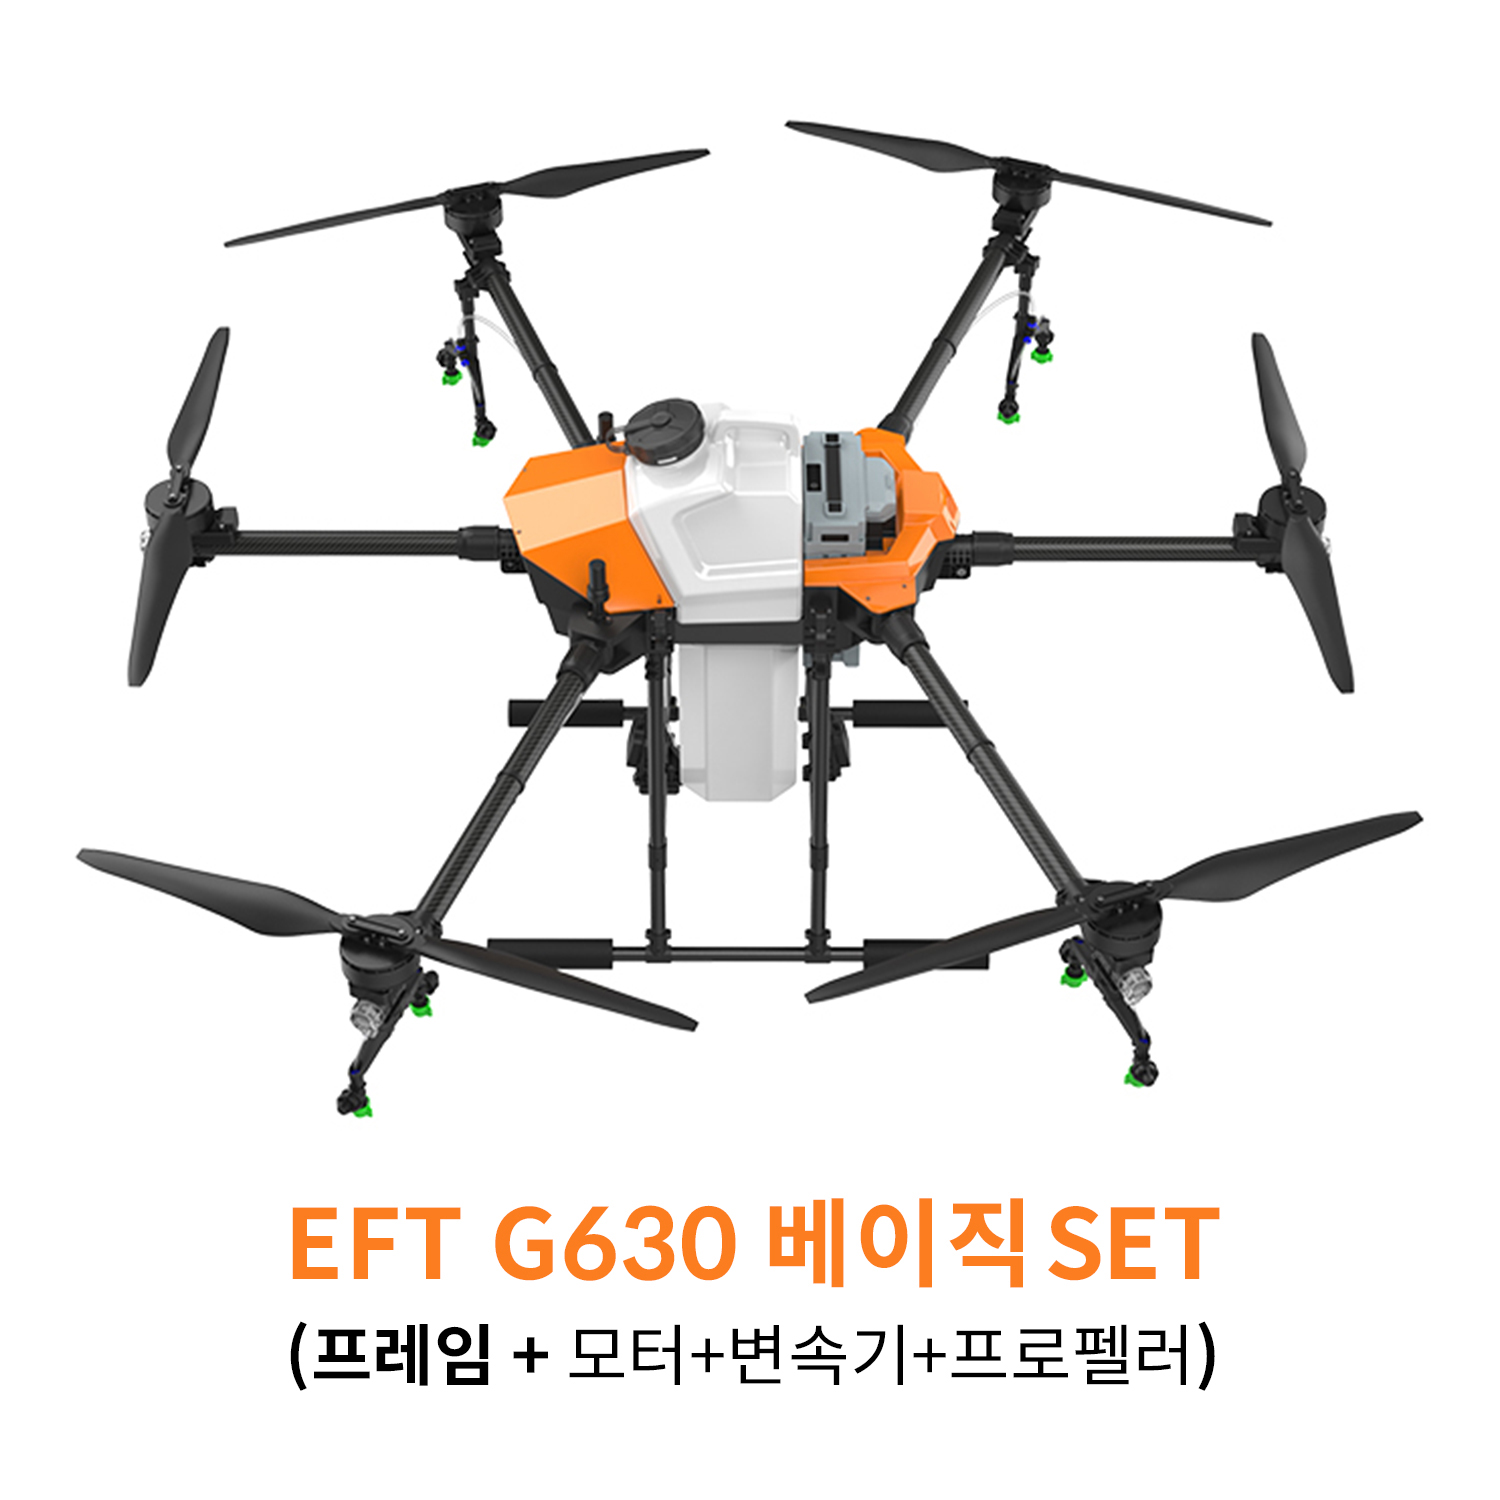 EFT G630 베이직 SET 농업 방제 드론하비윙 x9plus 파워시스템 탑재 헬셀